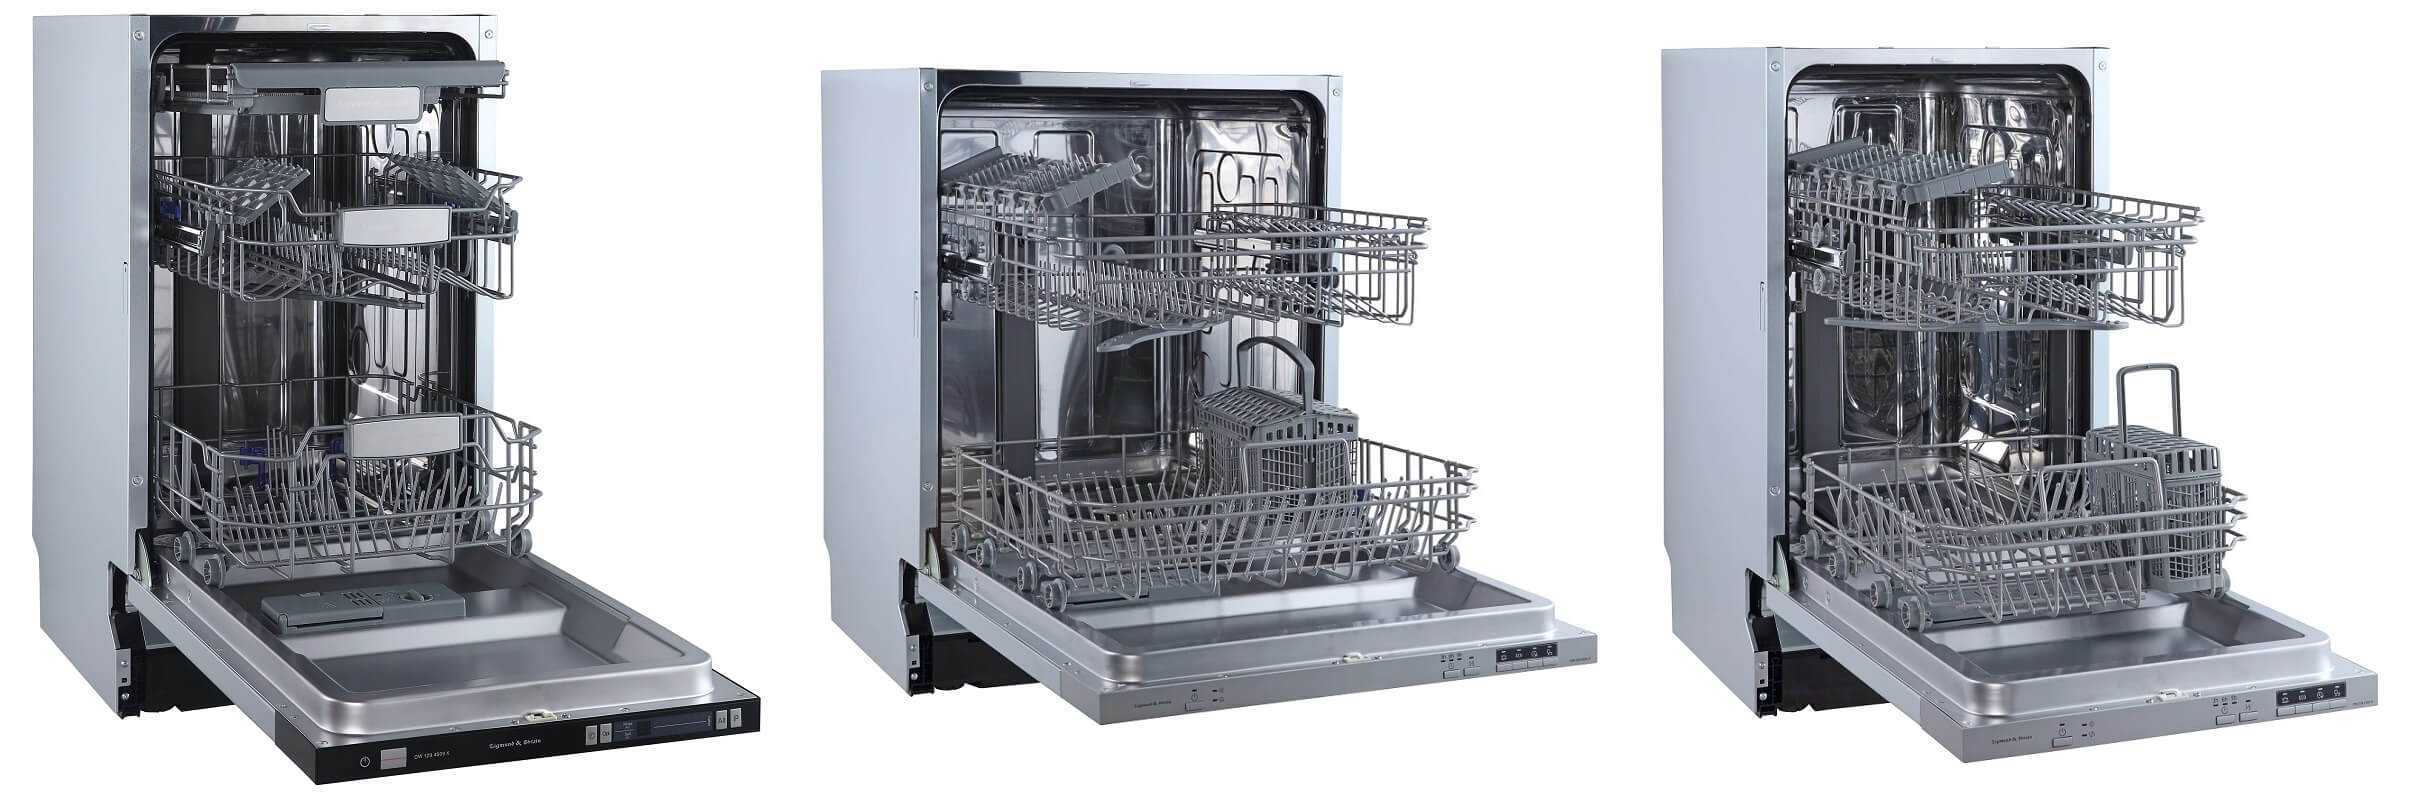 Посудомоечная машина 60 см встраиваемая рейтинг лучших. Bosch smh8zcx10r. Gv572d10 посудомоечная. Топ 10 посудомоечных машинок. Рейтинг посудомоечных машин встраиваемых 2023.